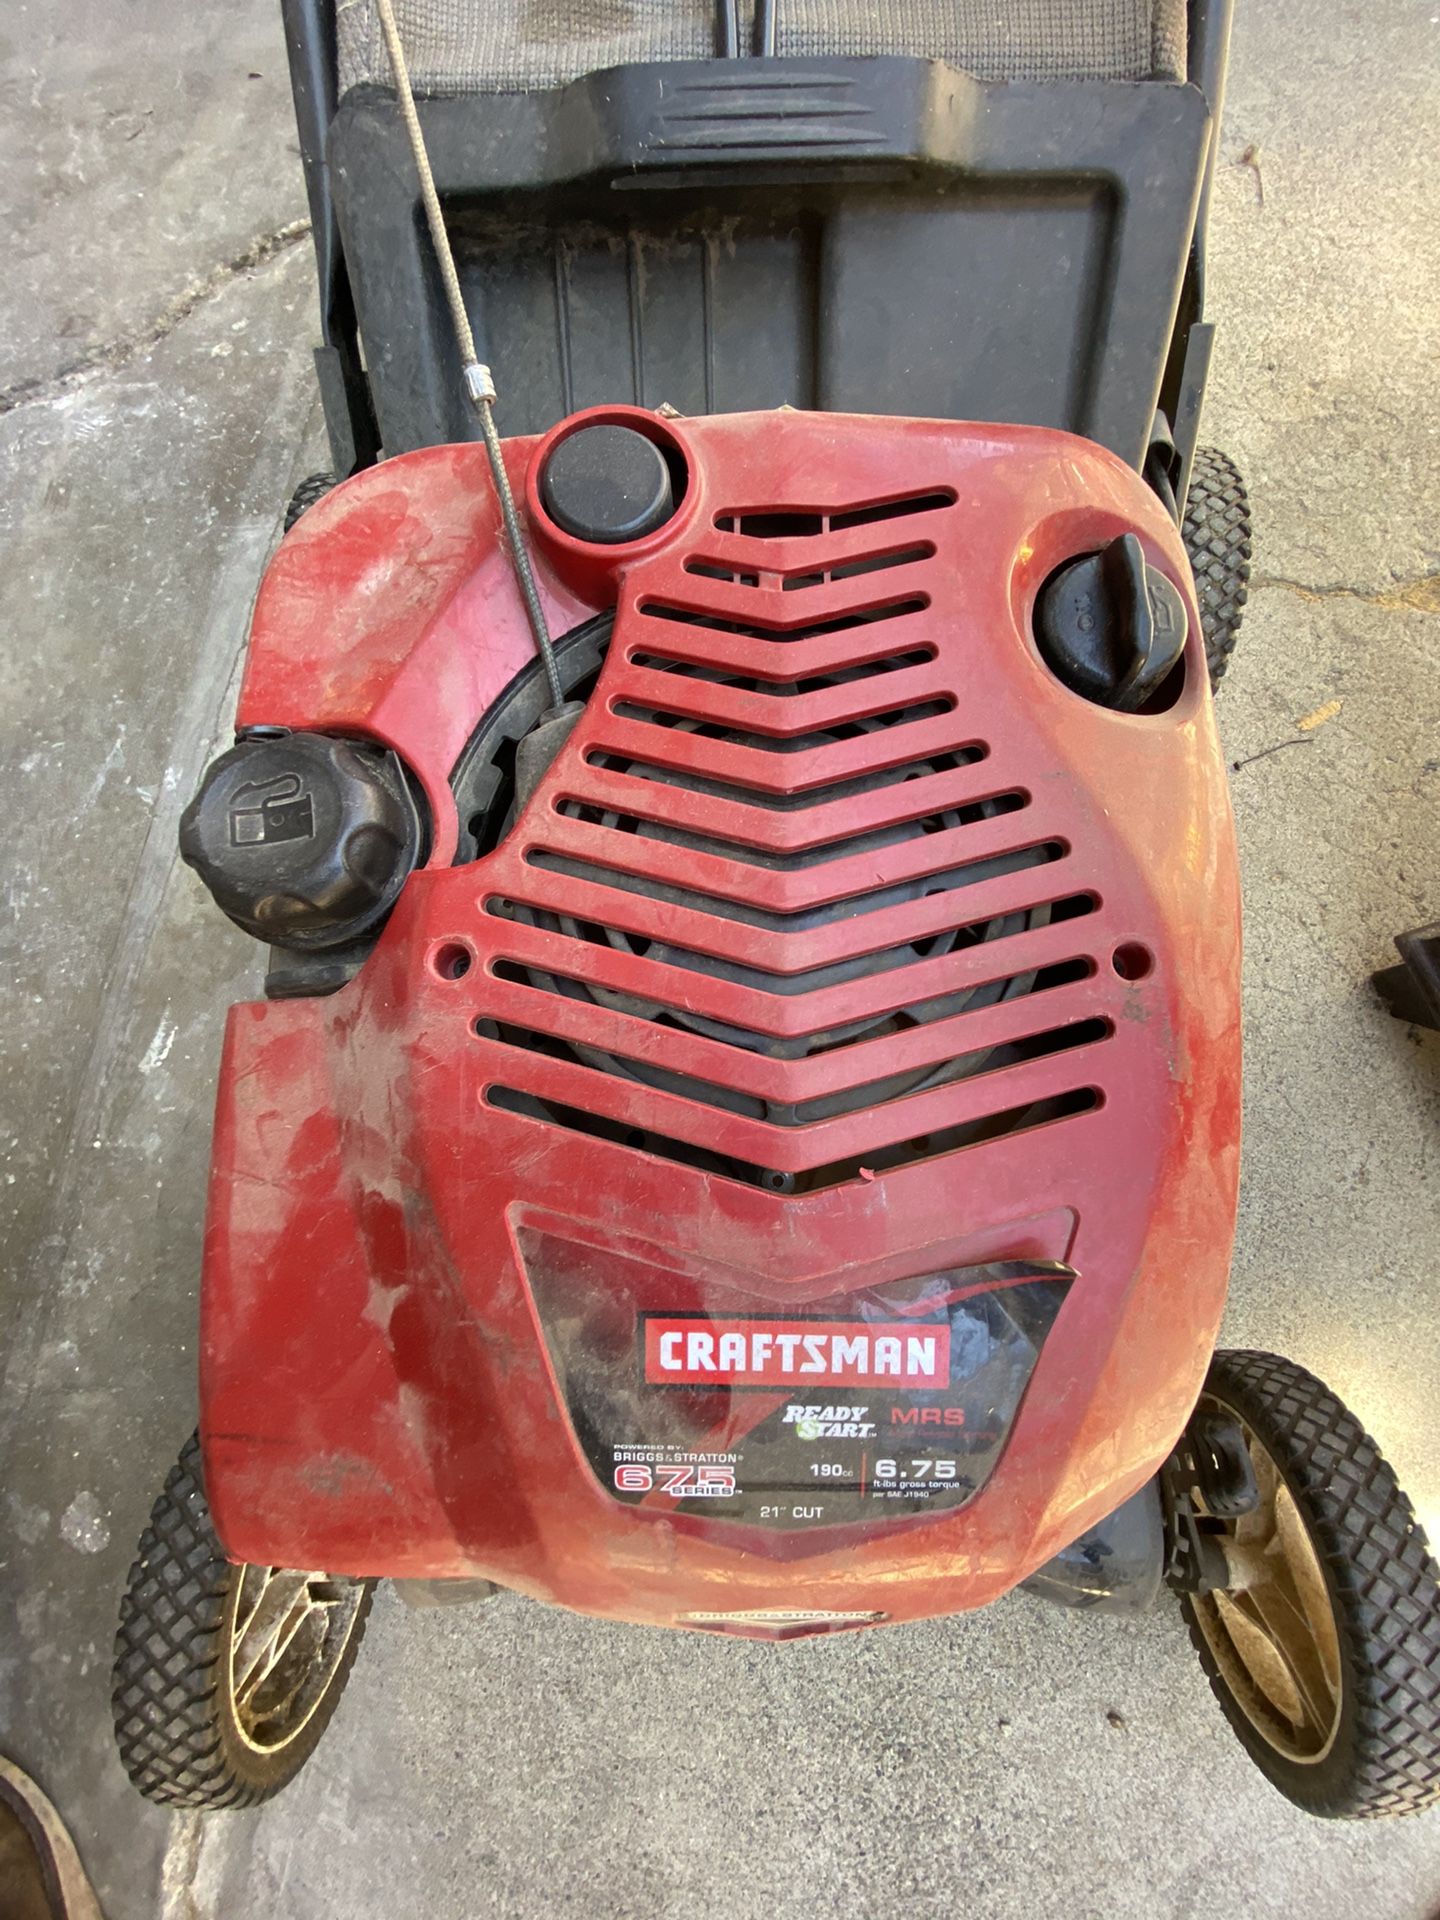 Craftsman lawnmower- 21” cut lawn mower